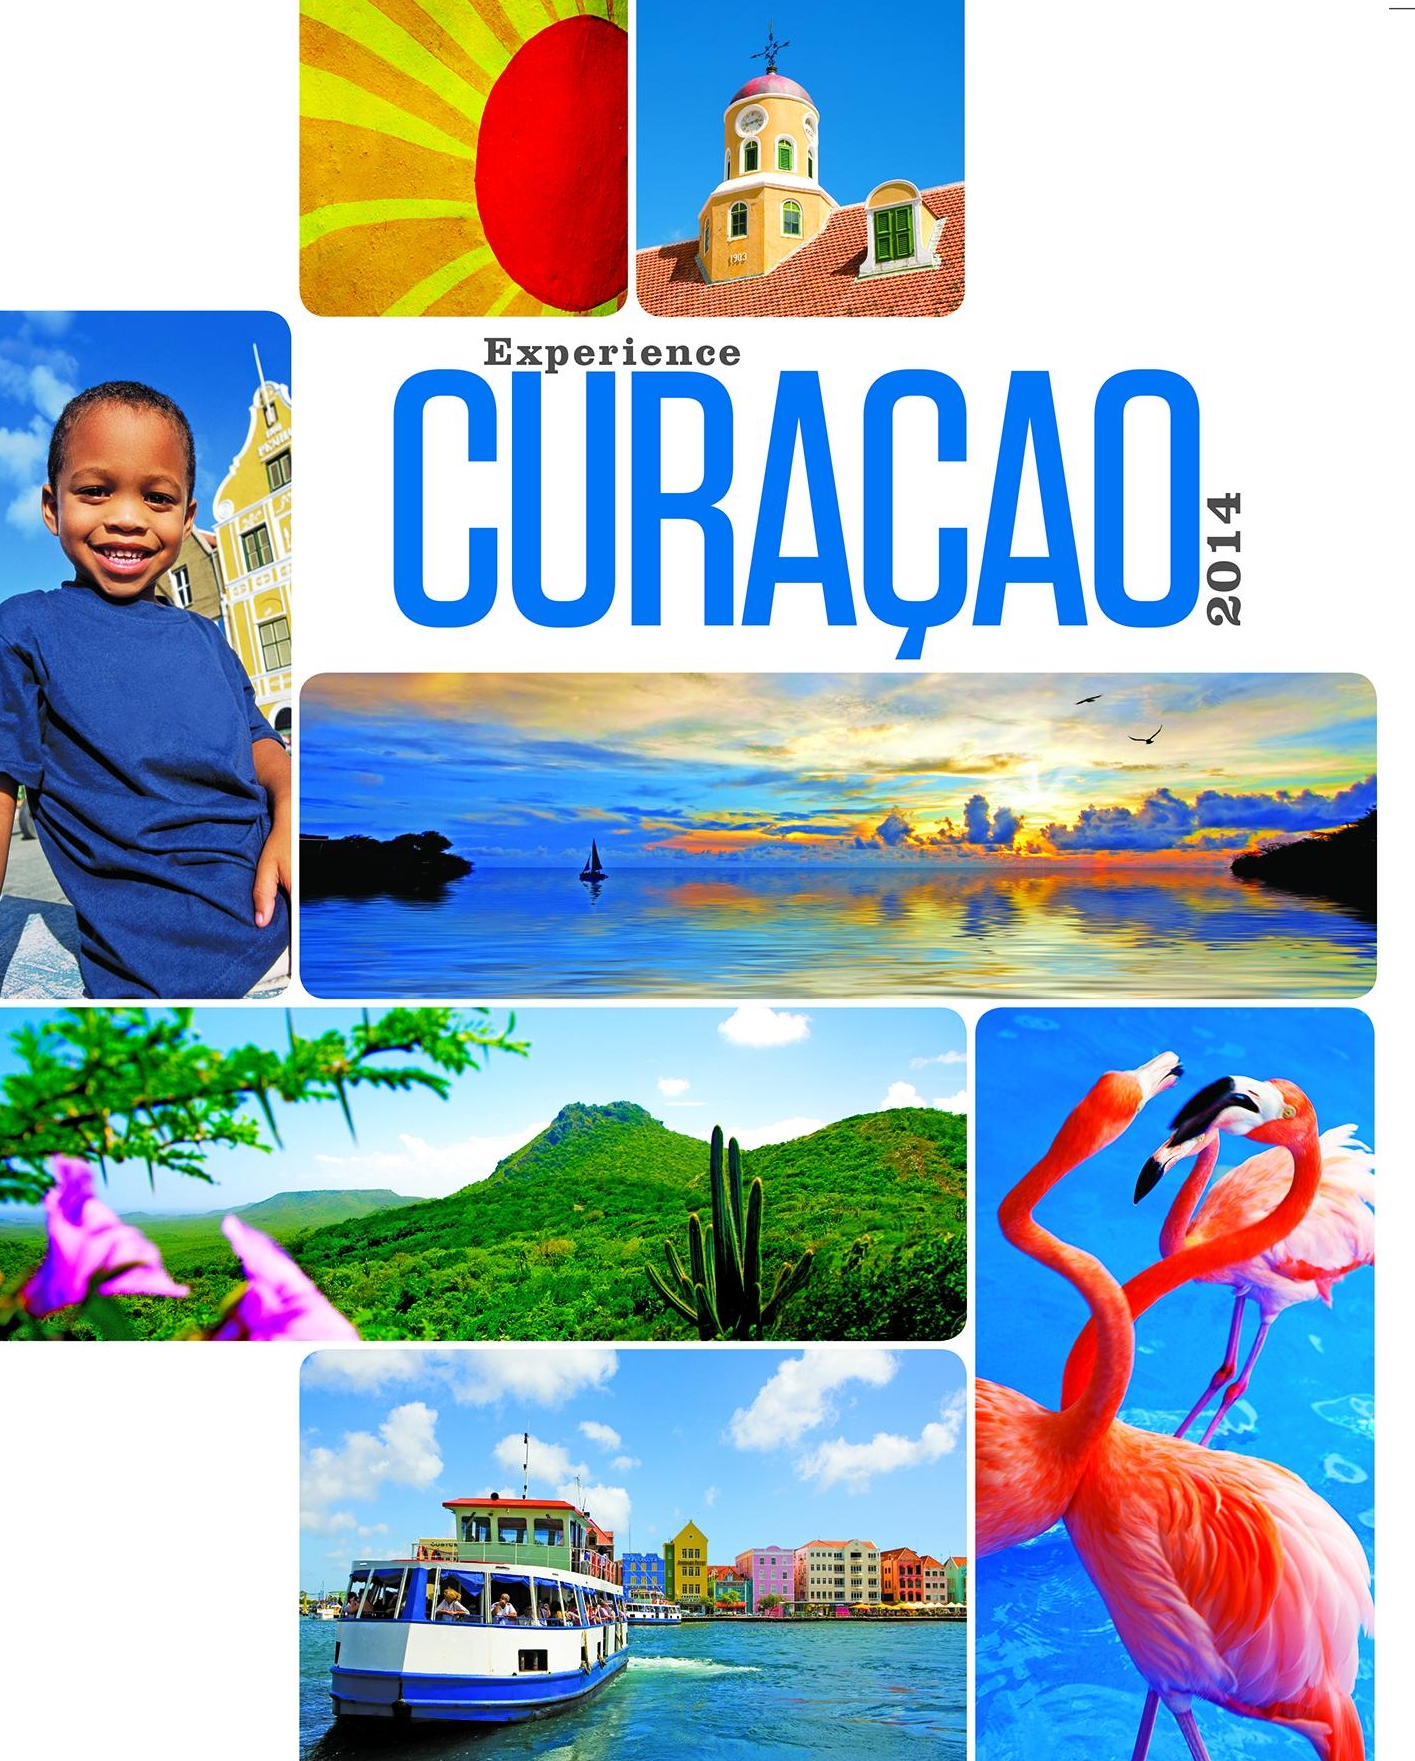 Experience Curacao